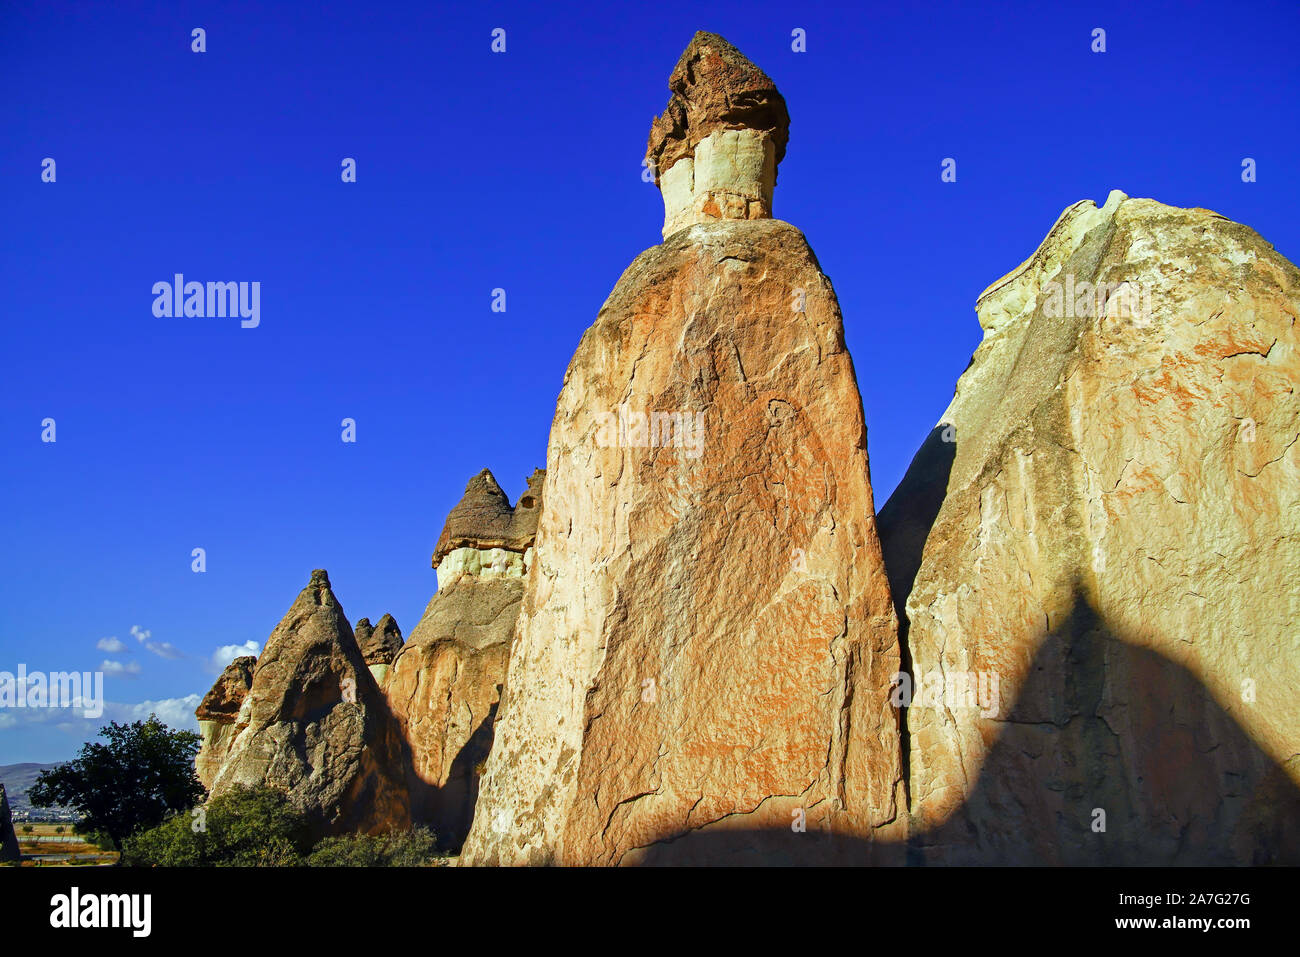 Spectacular anamazing rock formations in Cappadocia, Anatolia, Turkey. Stock Photo